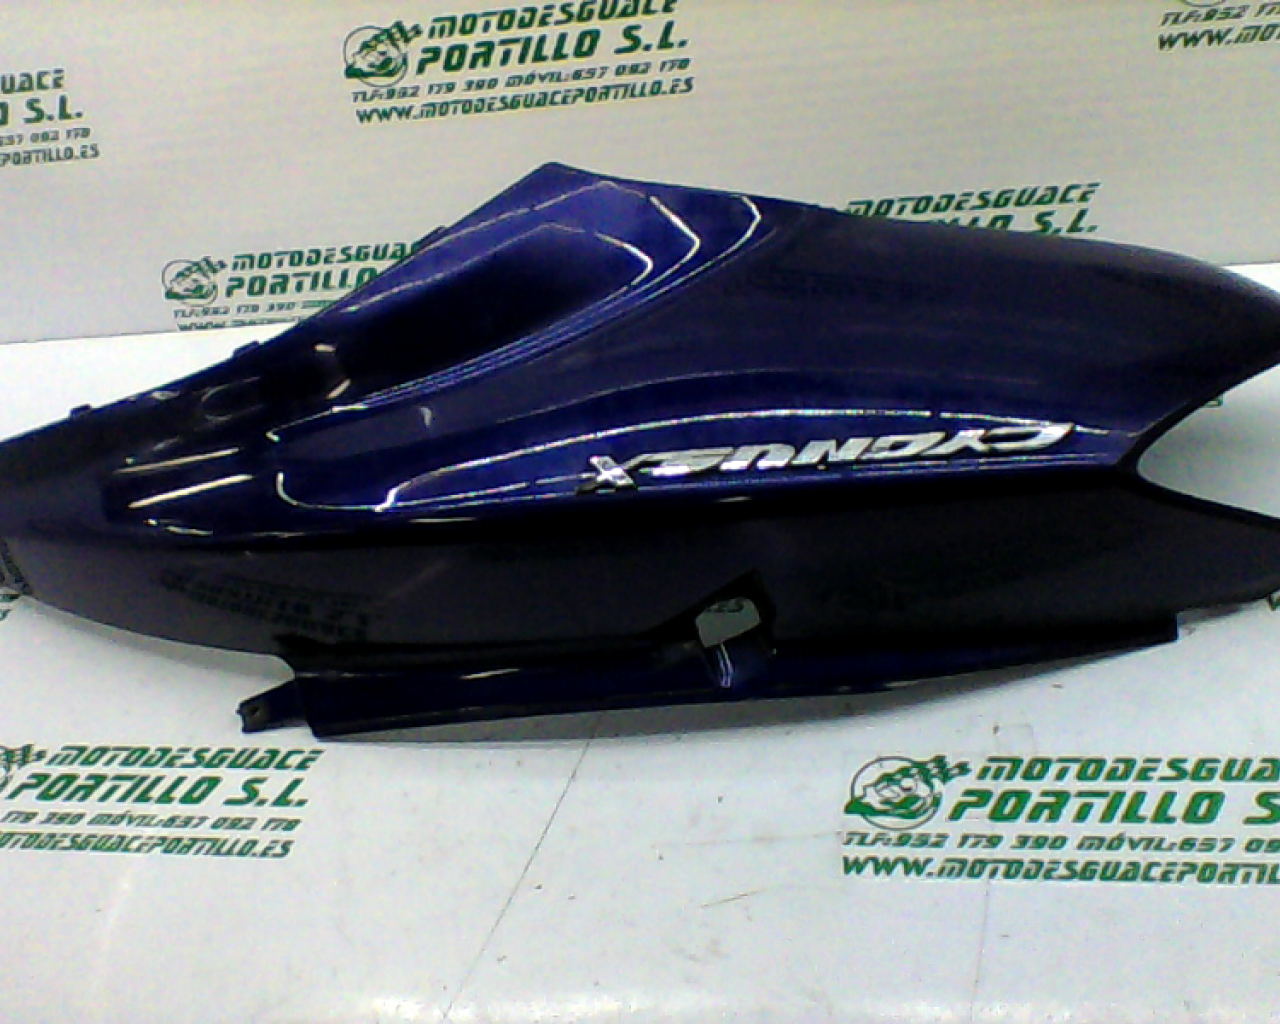 Carcasa lateral trasera derecha Yamaha Cygnus x 125  (2004-2004)